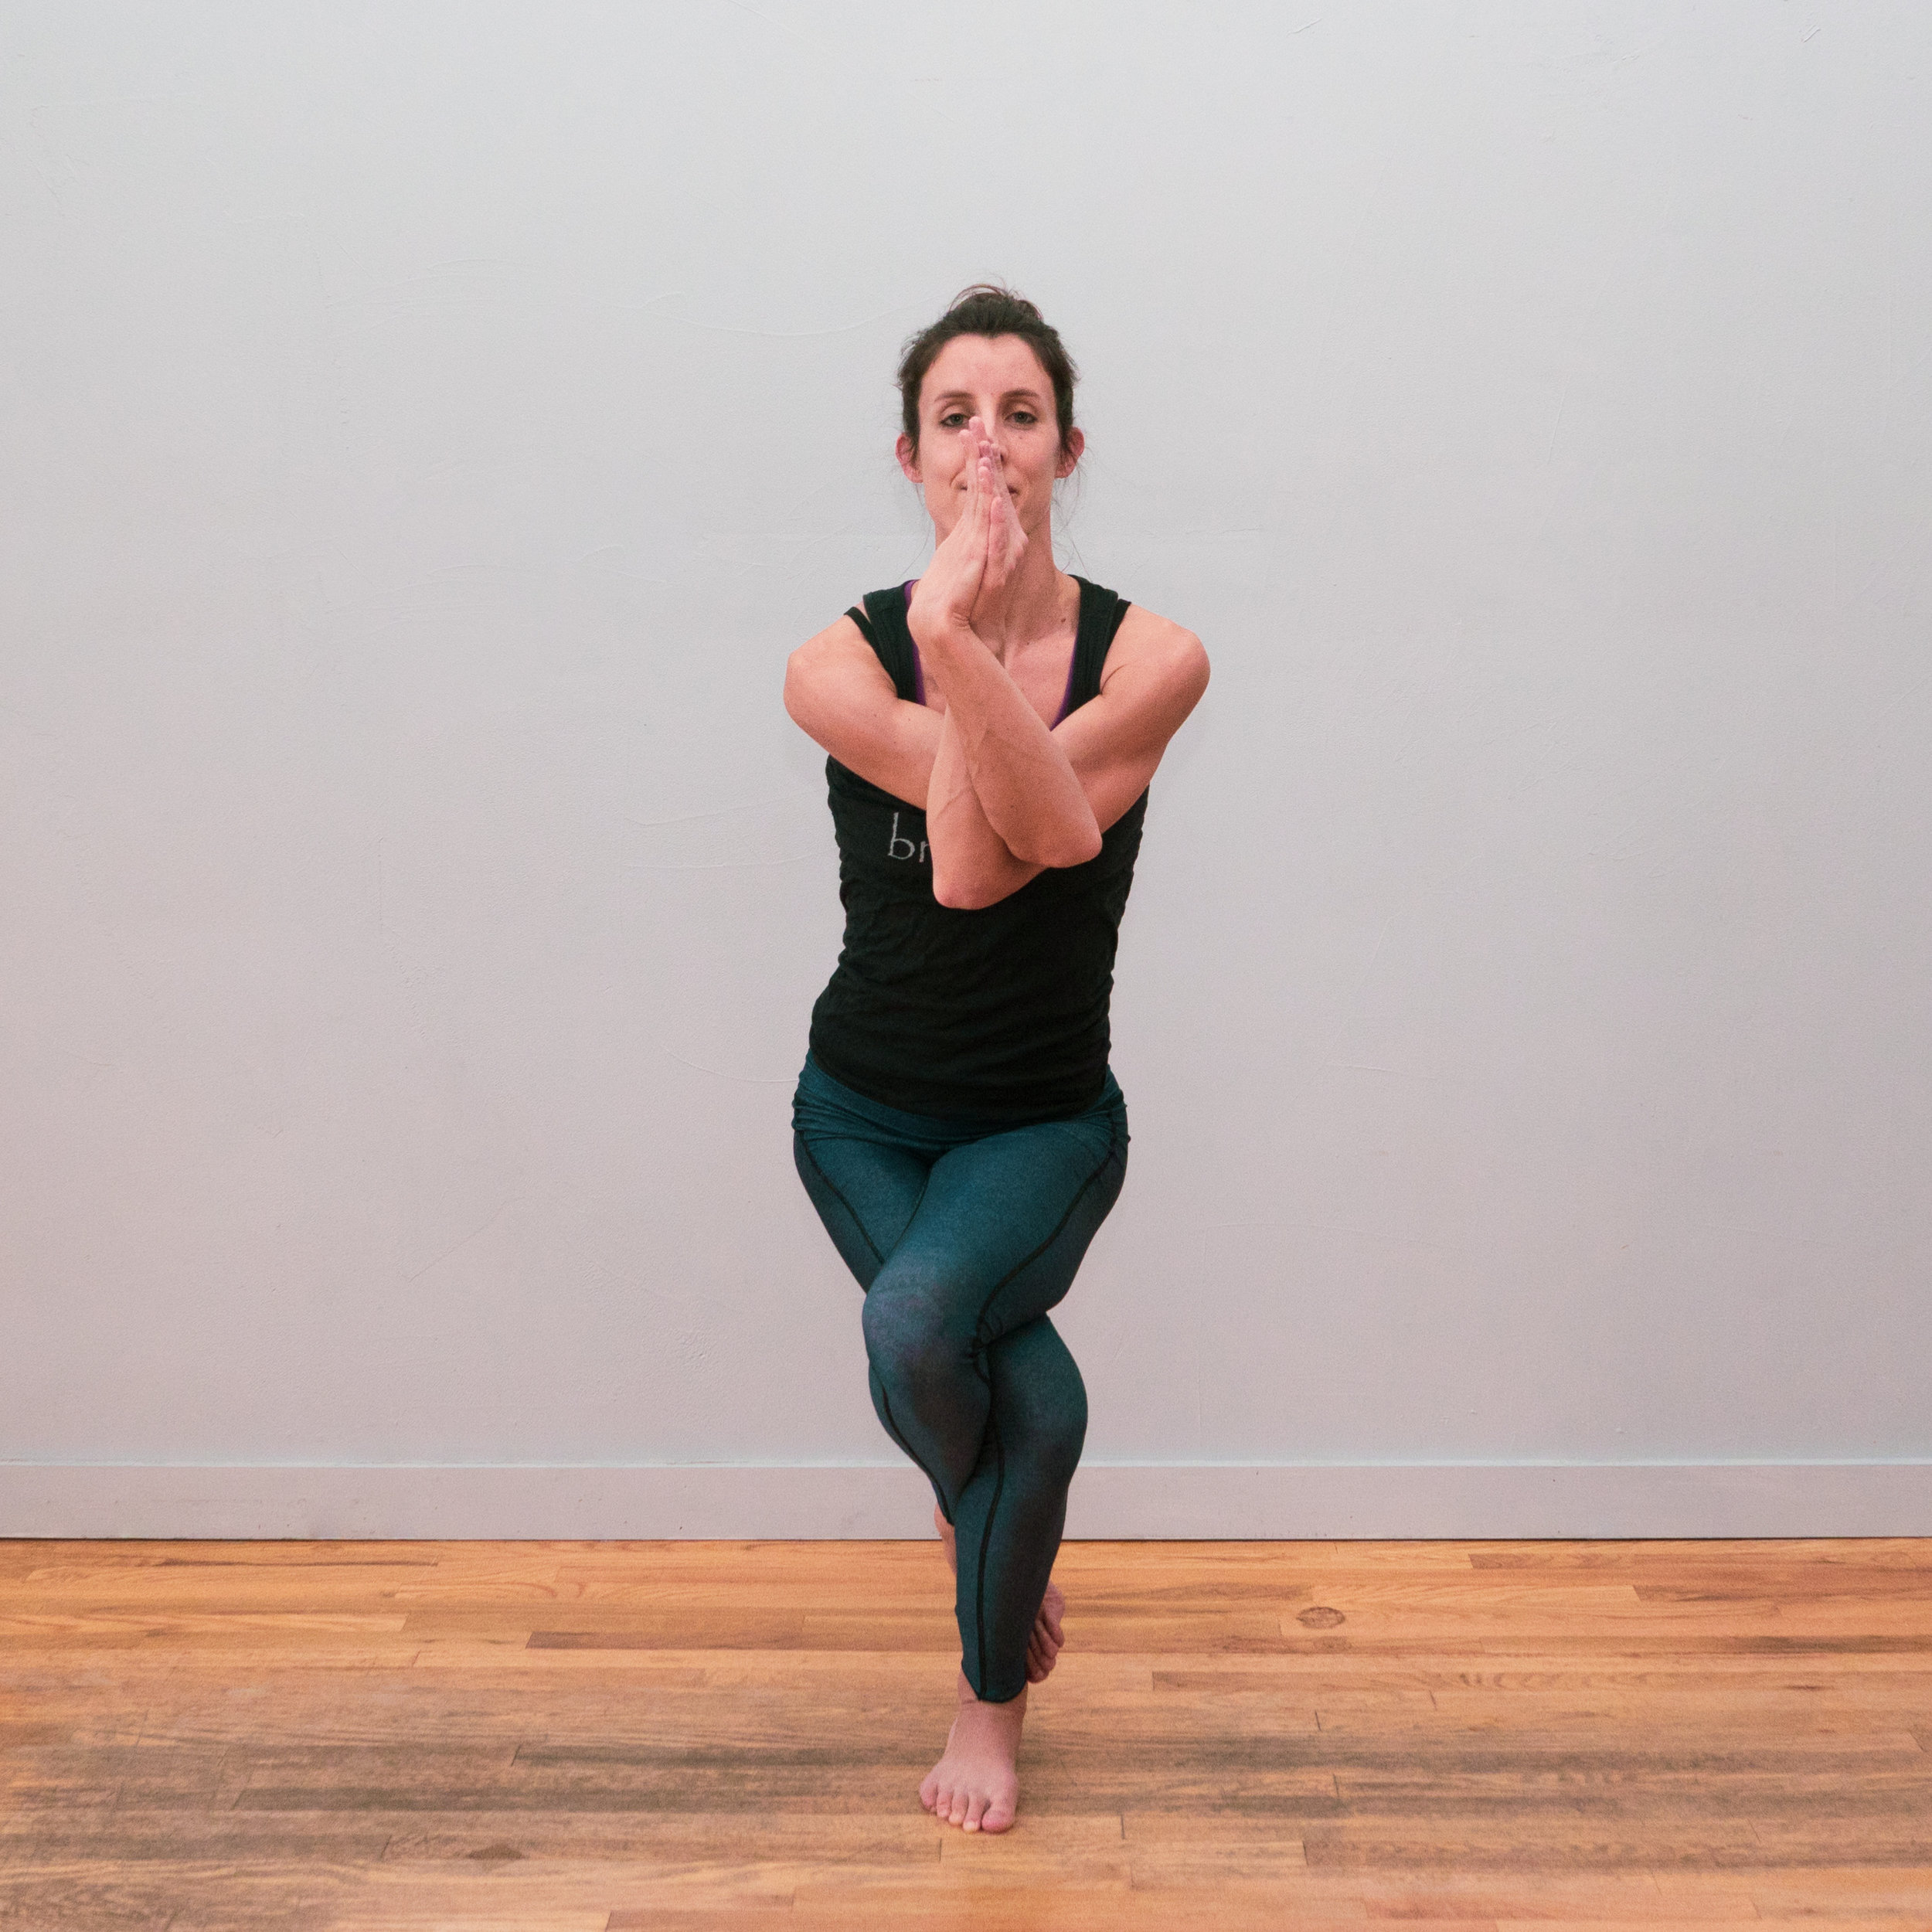 Hot Yoga : How to Master Awkward Pose - YouTube